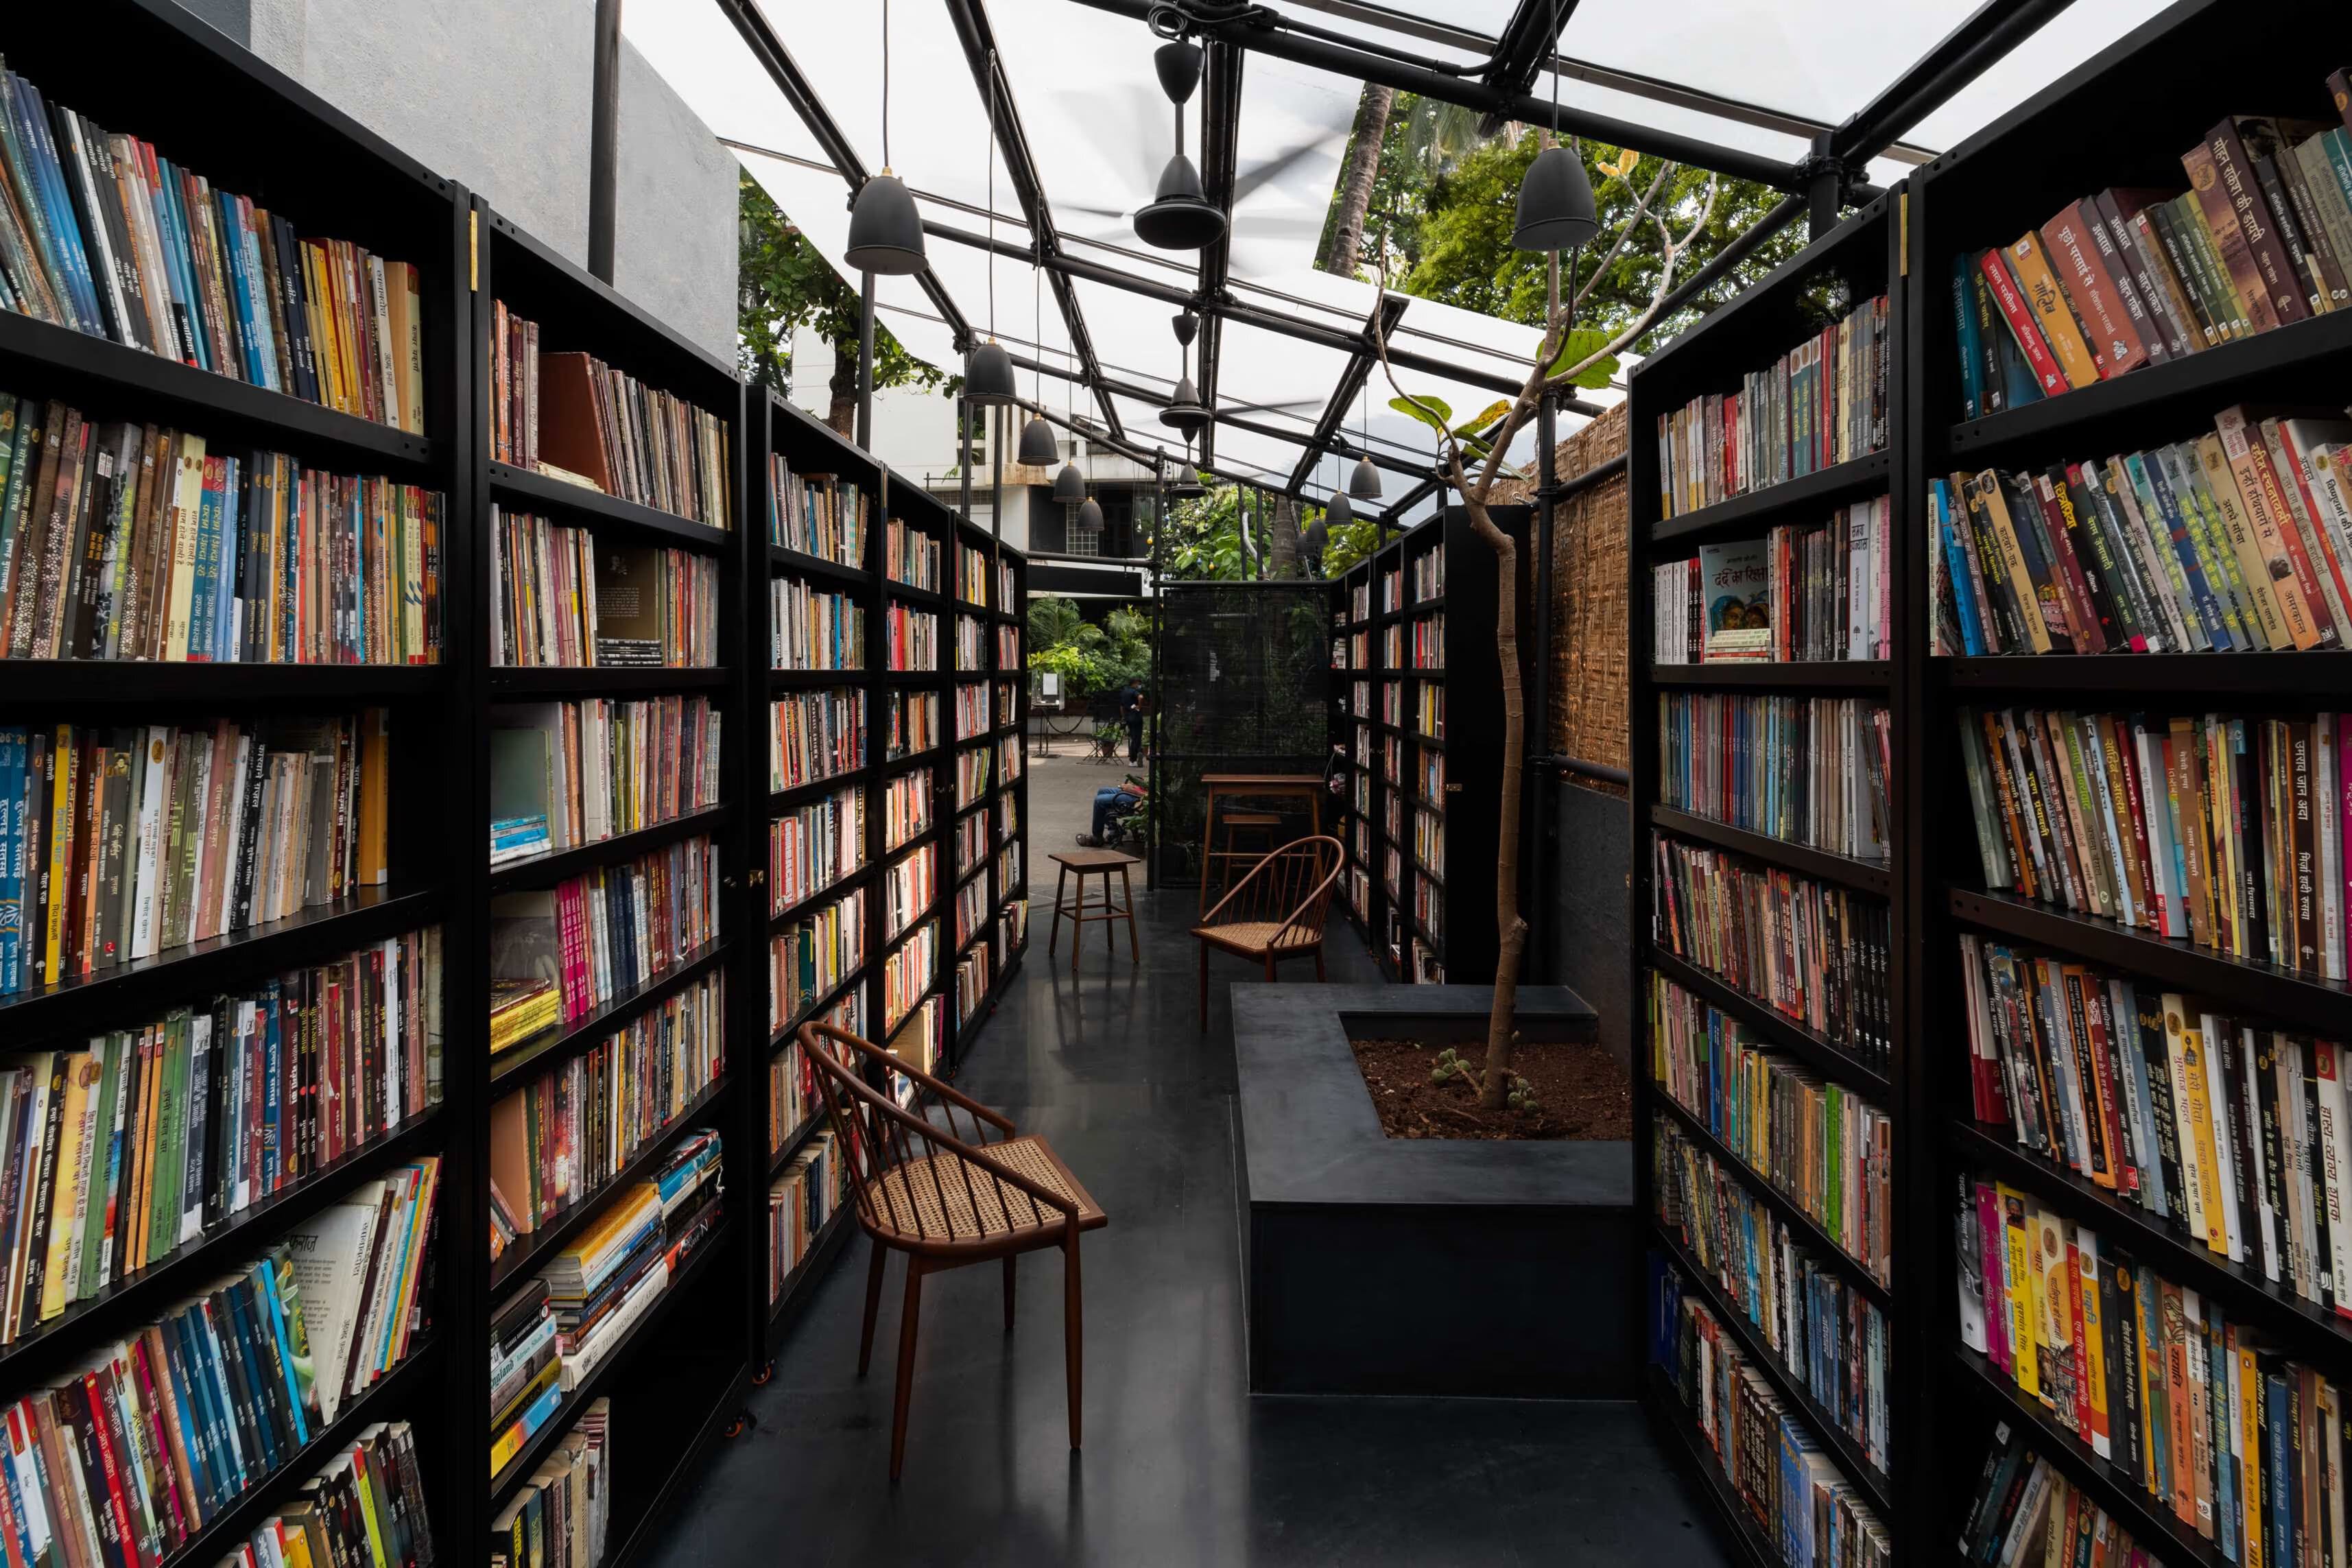 Prithvi Bookshop